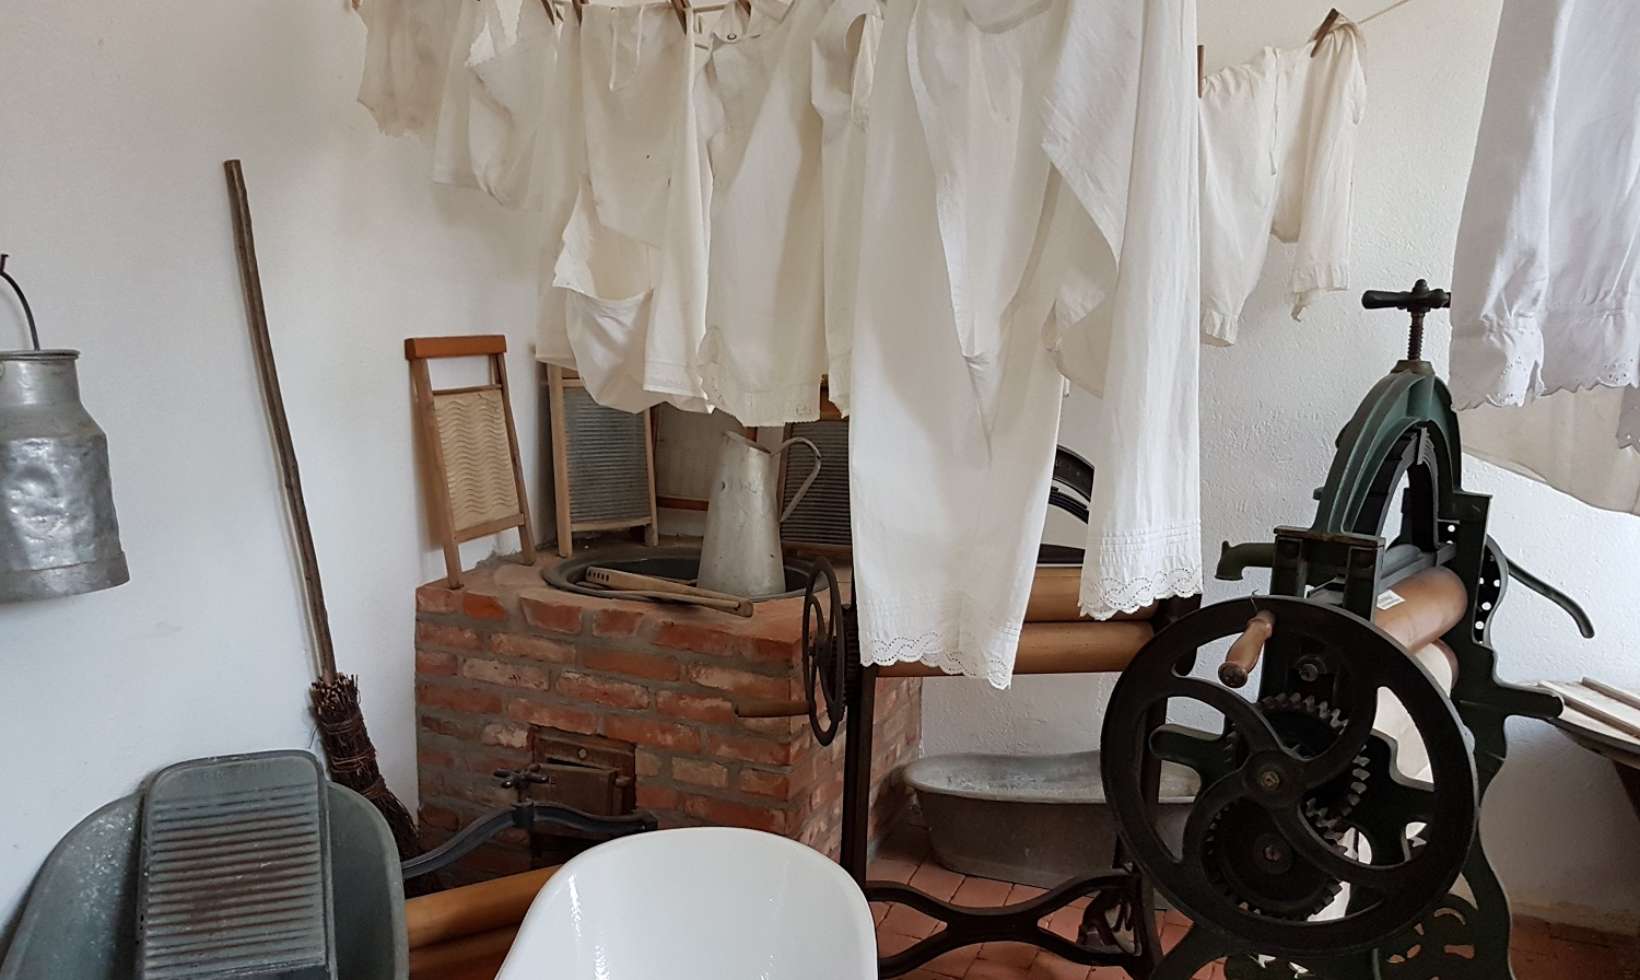 Eine alte Waschküche im Lewitzer Störtalmuseum lässt erahnen, wieviel mehr Zeit es noch vor einigen Jahrzehnten für saubere Wäsche brauchte als heute.